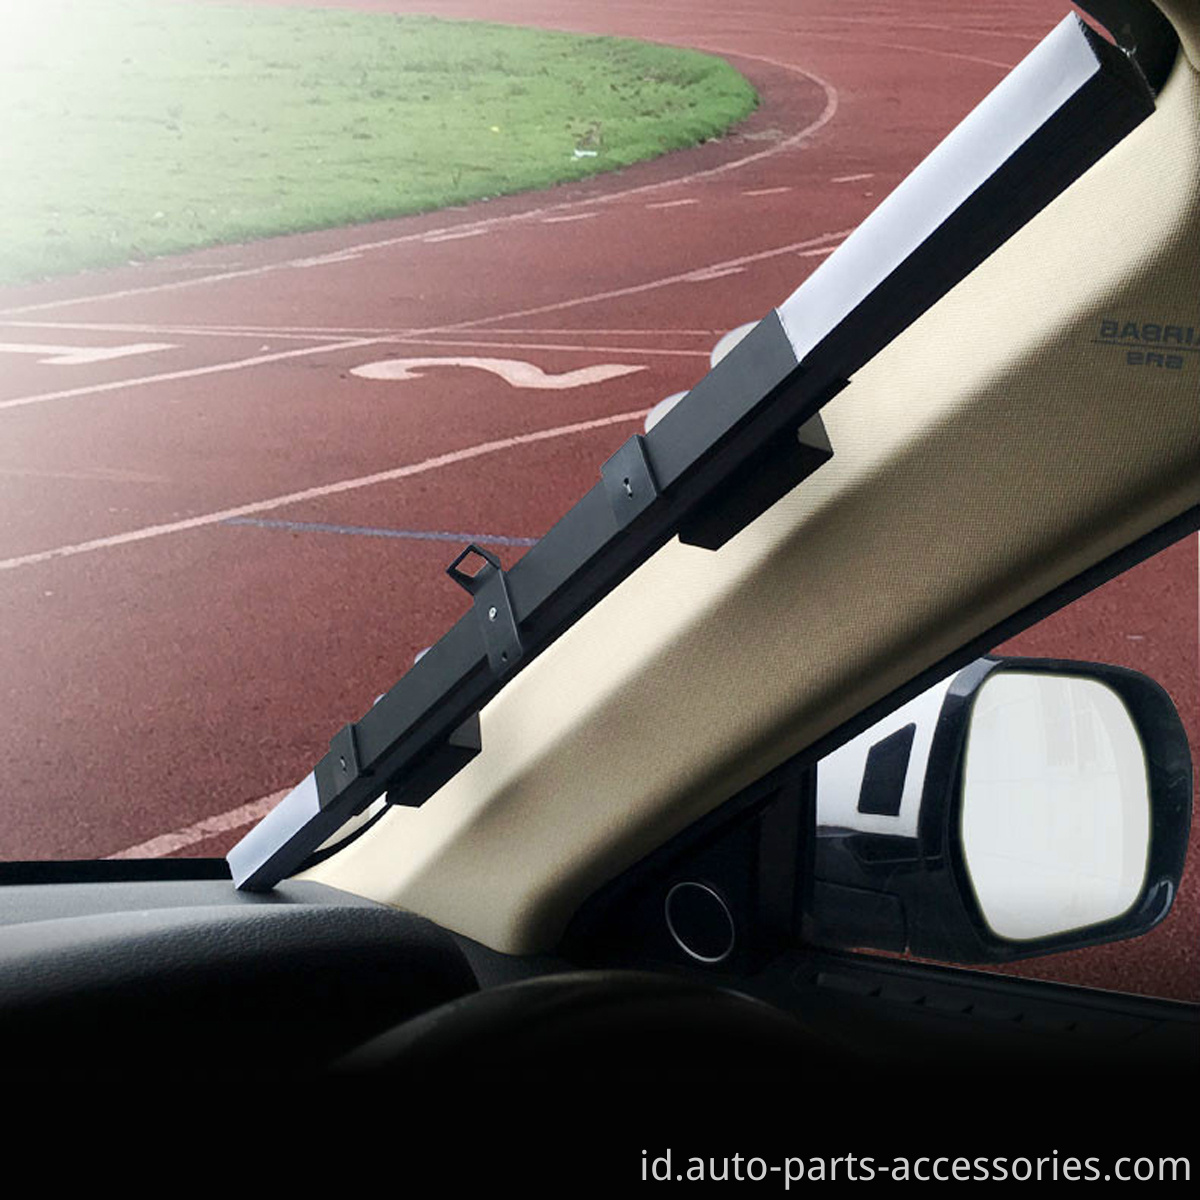 Pencetakan Kaca Depan Kustom Retractable Auto Instal Sunshade Mobil Nirkabel Untuk Jendela Depan